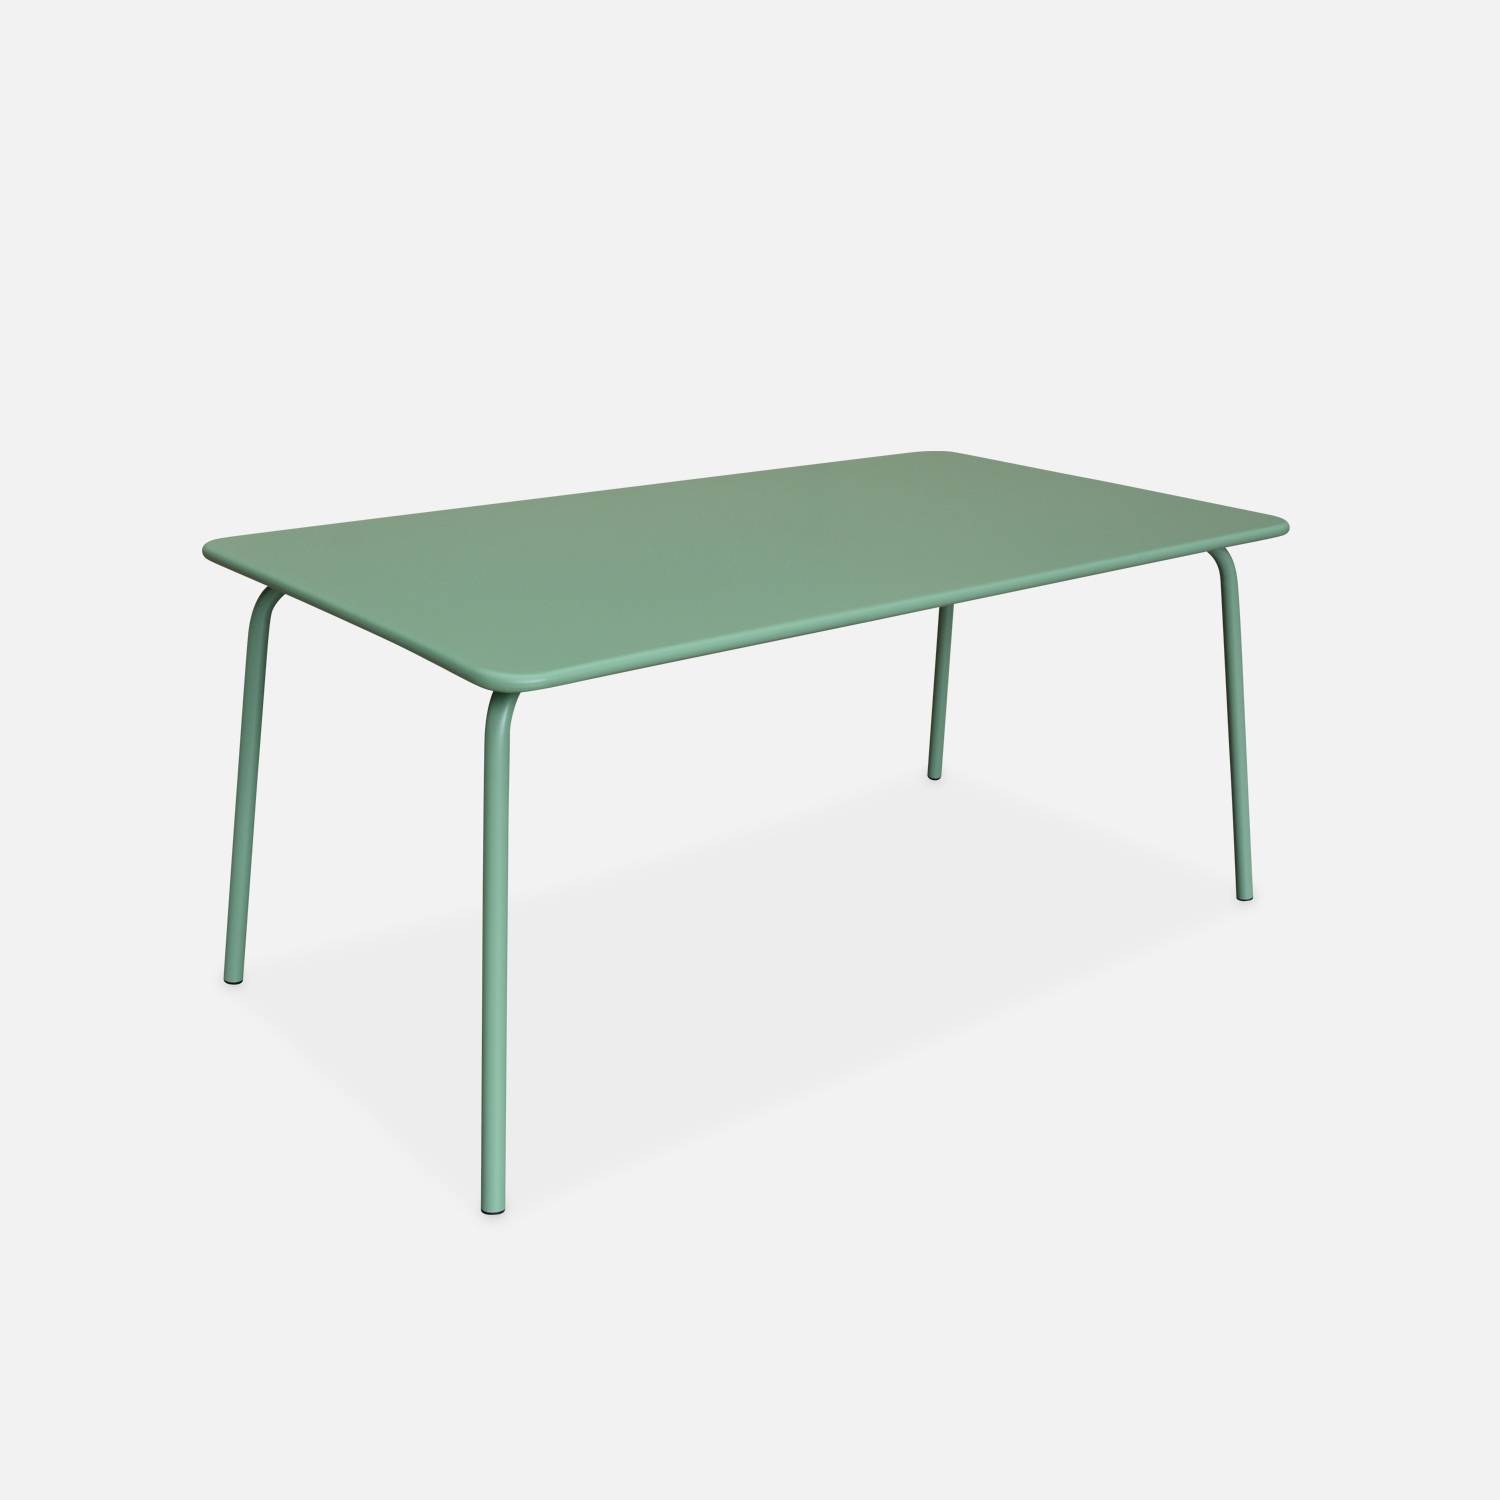 Gartentisch aus Metall 160x90cm, jadegrün l sweeek